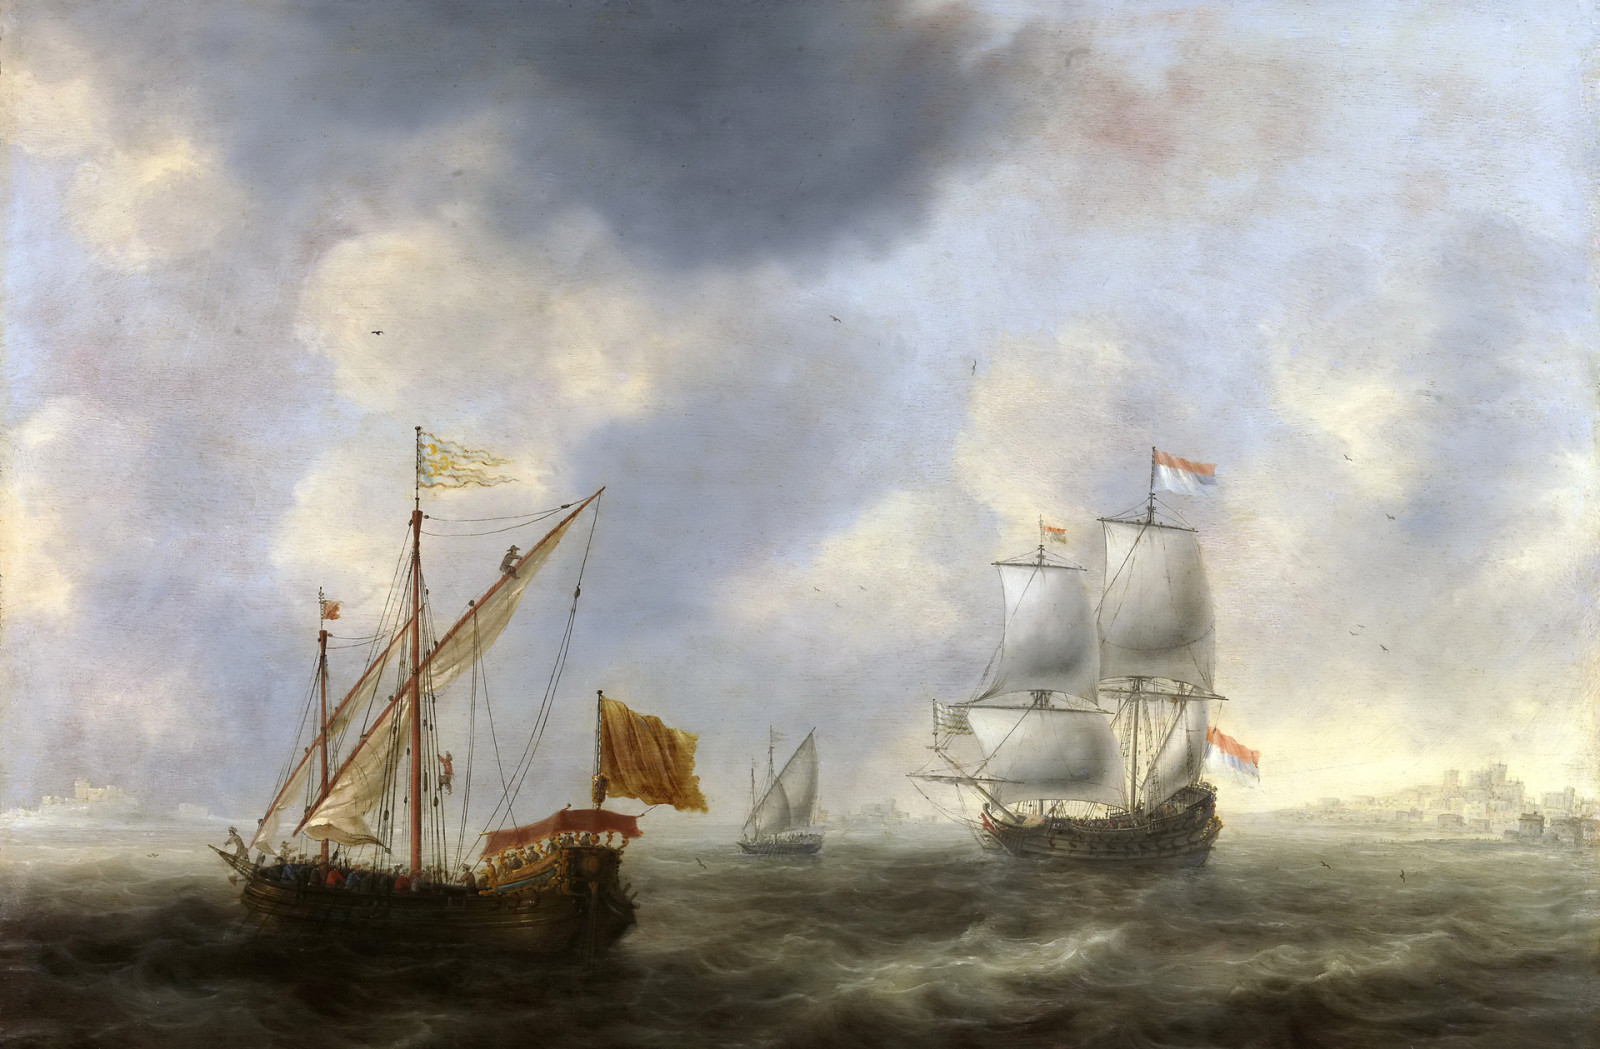 ทะเล, ภาพ, เรือ, คลื่น, ธง, แล่นเรือ, ภาพทะเล, Jacob Adriaensz Bellevois